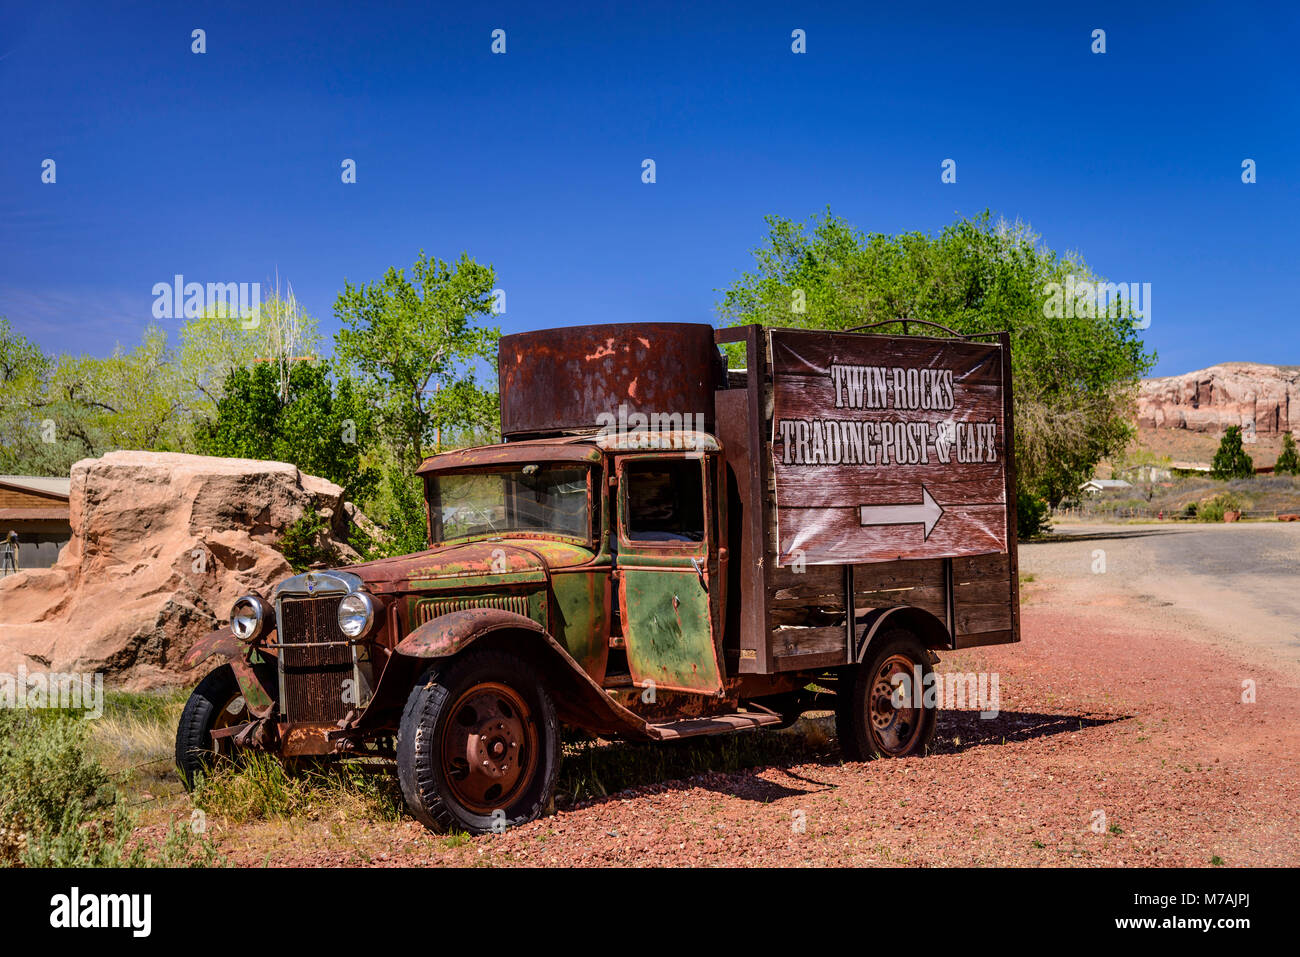 Les États-Unis, l'Utah, le comté de San Juan, Bluff, camion, voiture classique Twin Rocks Trading Post Inscription, café Banque D'Images